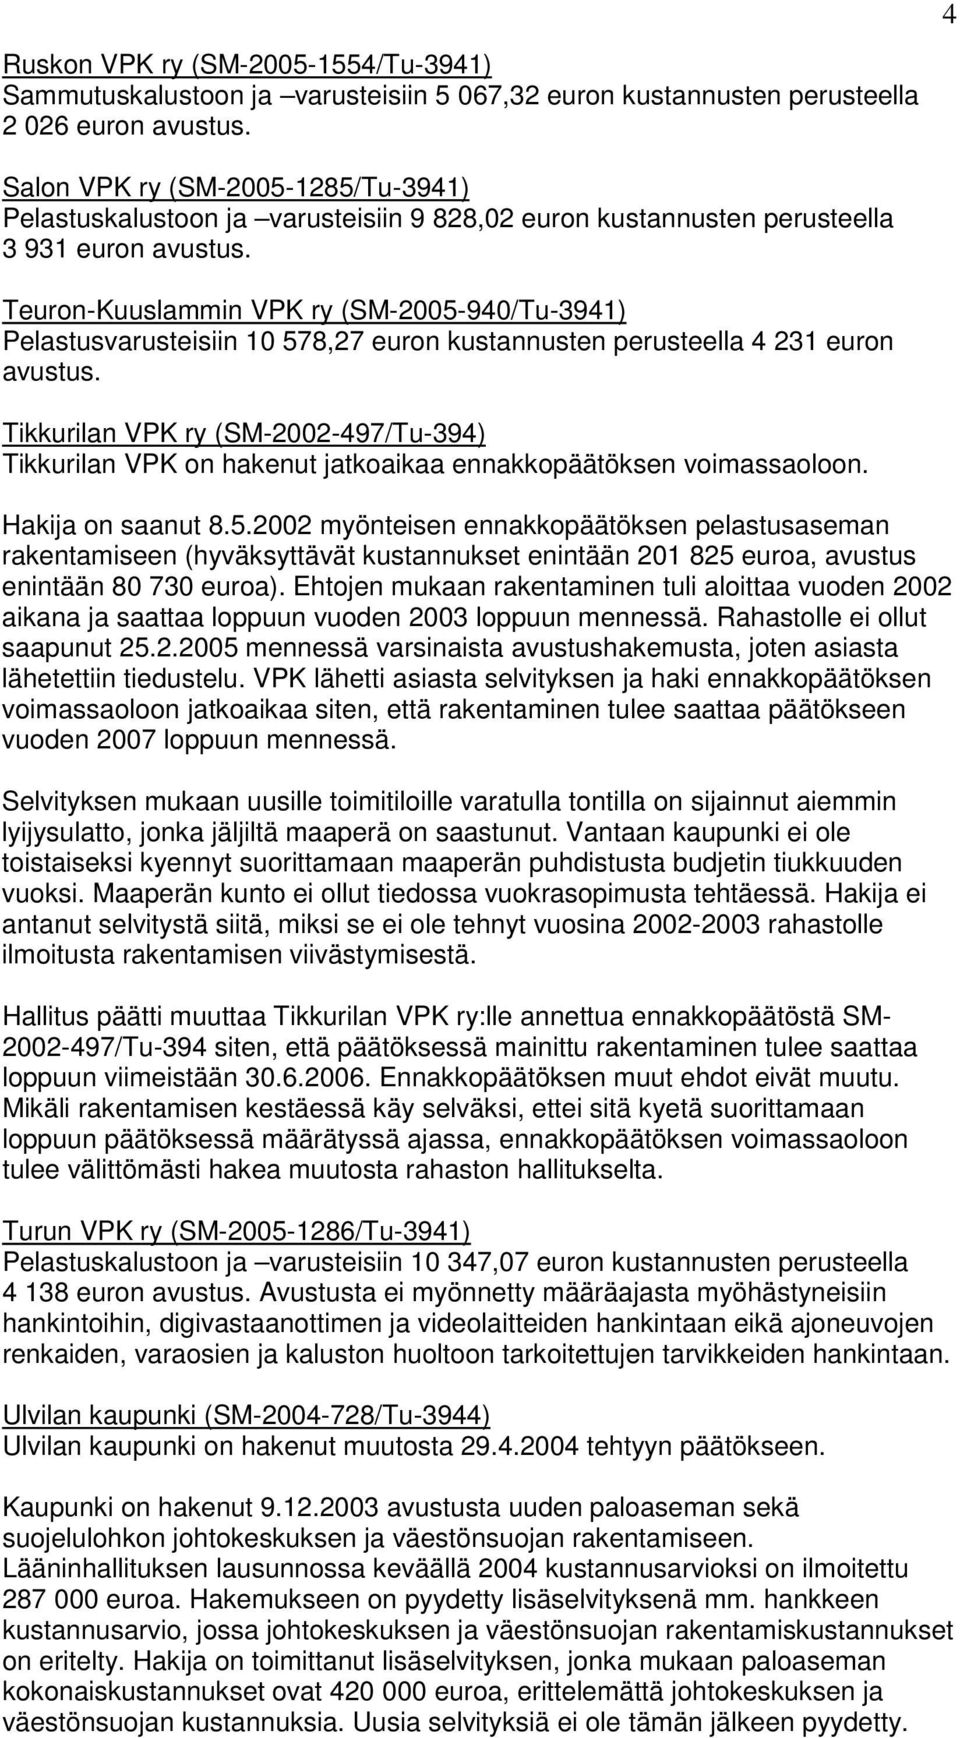 Tikkurilan VPK ry (SM-2002-497/Tu-394) Tikkurilan VPK on hakenut jatkoaikaa ennakkopäätöksen voimassaoloon. Hakija on saanut 8.5.